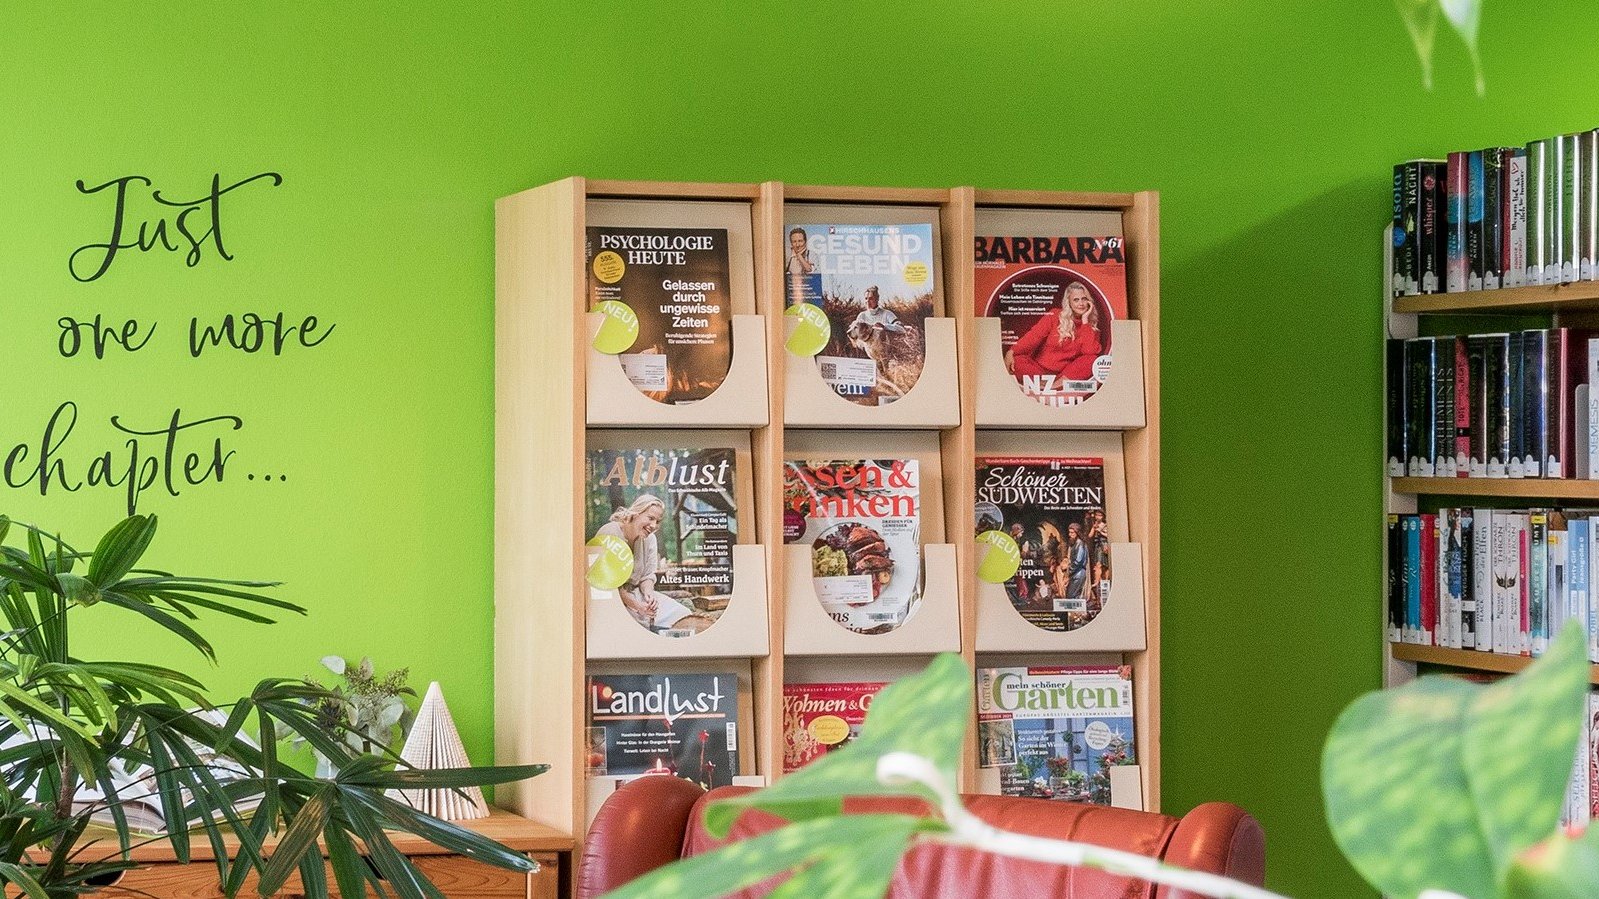 Auf dem Bild ist eine grüne Wand mit einem Tattoo das heißt, Just one more chapter ... zu sehen. Vor der grünen Wand steht ein Regal mit verschiedenen Zeitschriften darin. Auf der linken Seite vom Bild ist ebenfalls ein Regal mit vielen Büchern zu sehen. Im Vordergrund stehen grüne Pflanzen und ganz leicht ist ein roter Sessel ebenfalls im Vordergrund zu sehen.